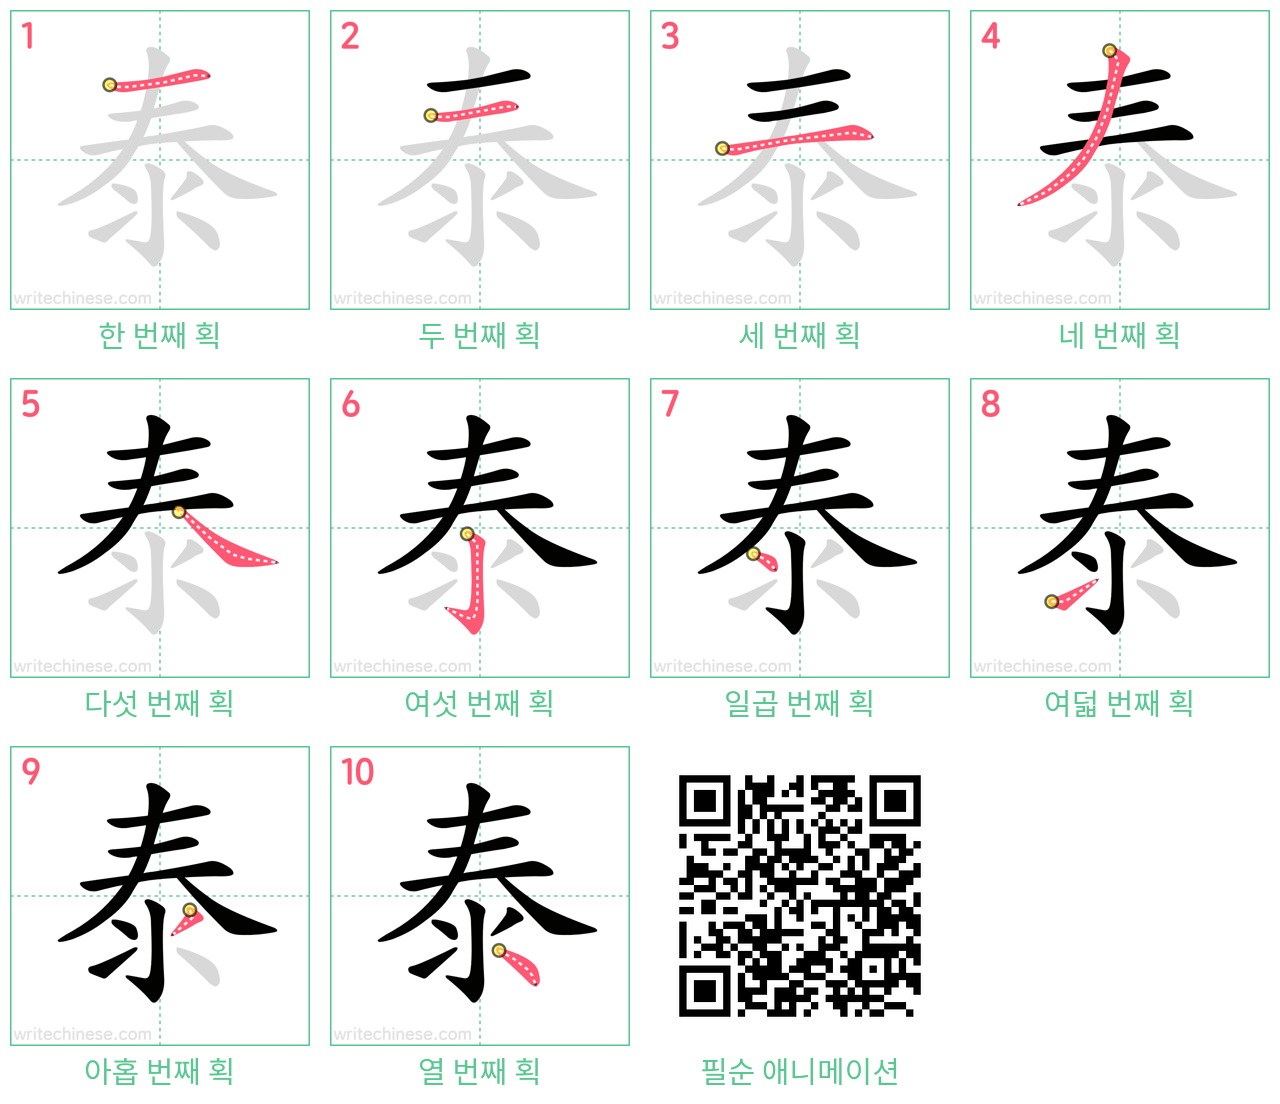 泰 step-by-step stroke order diagrams